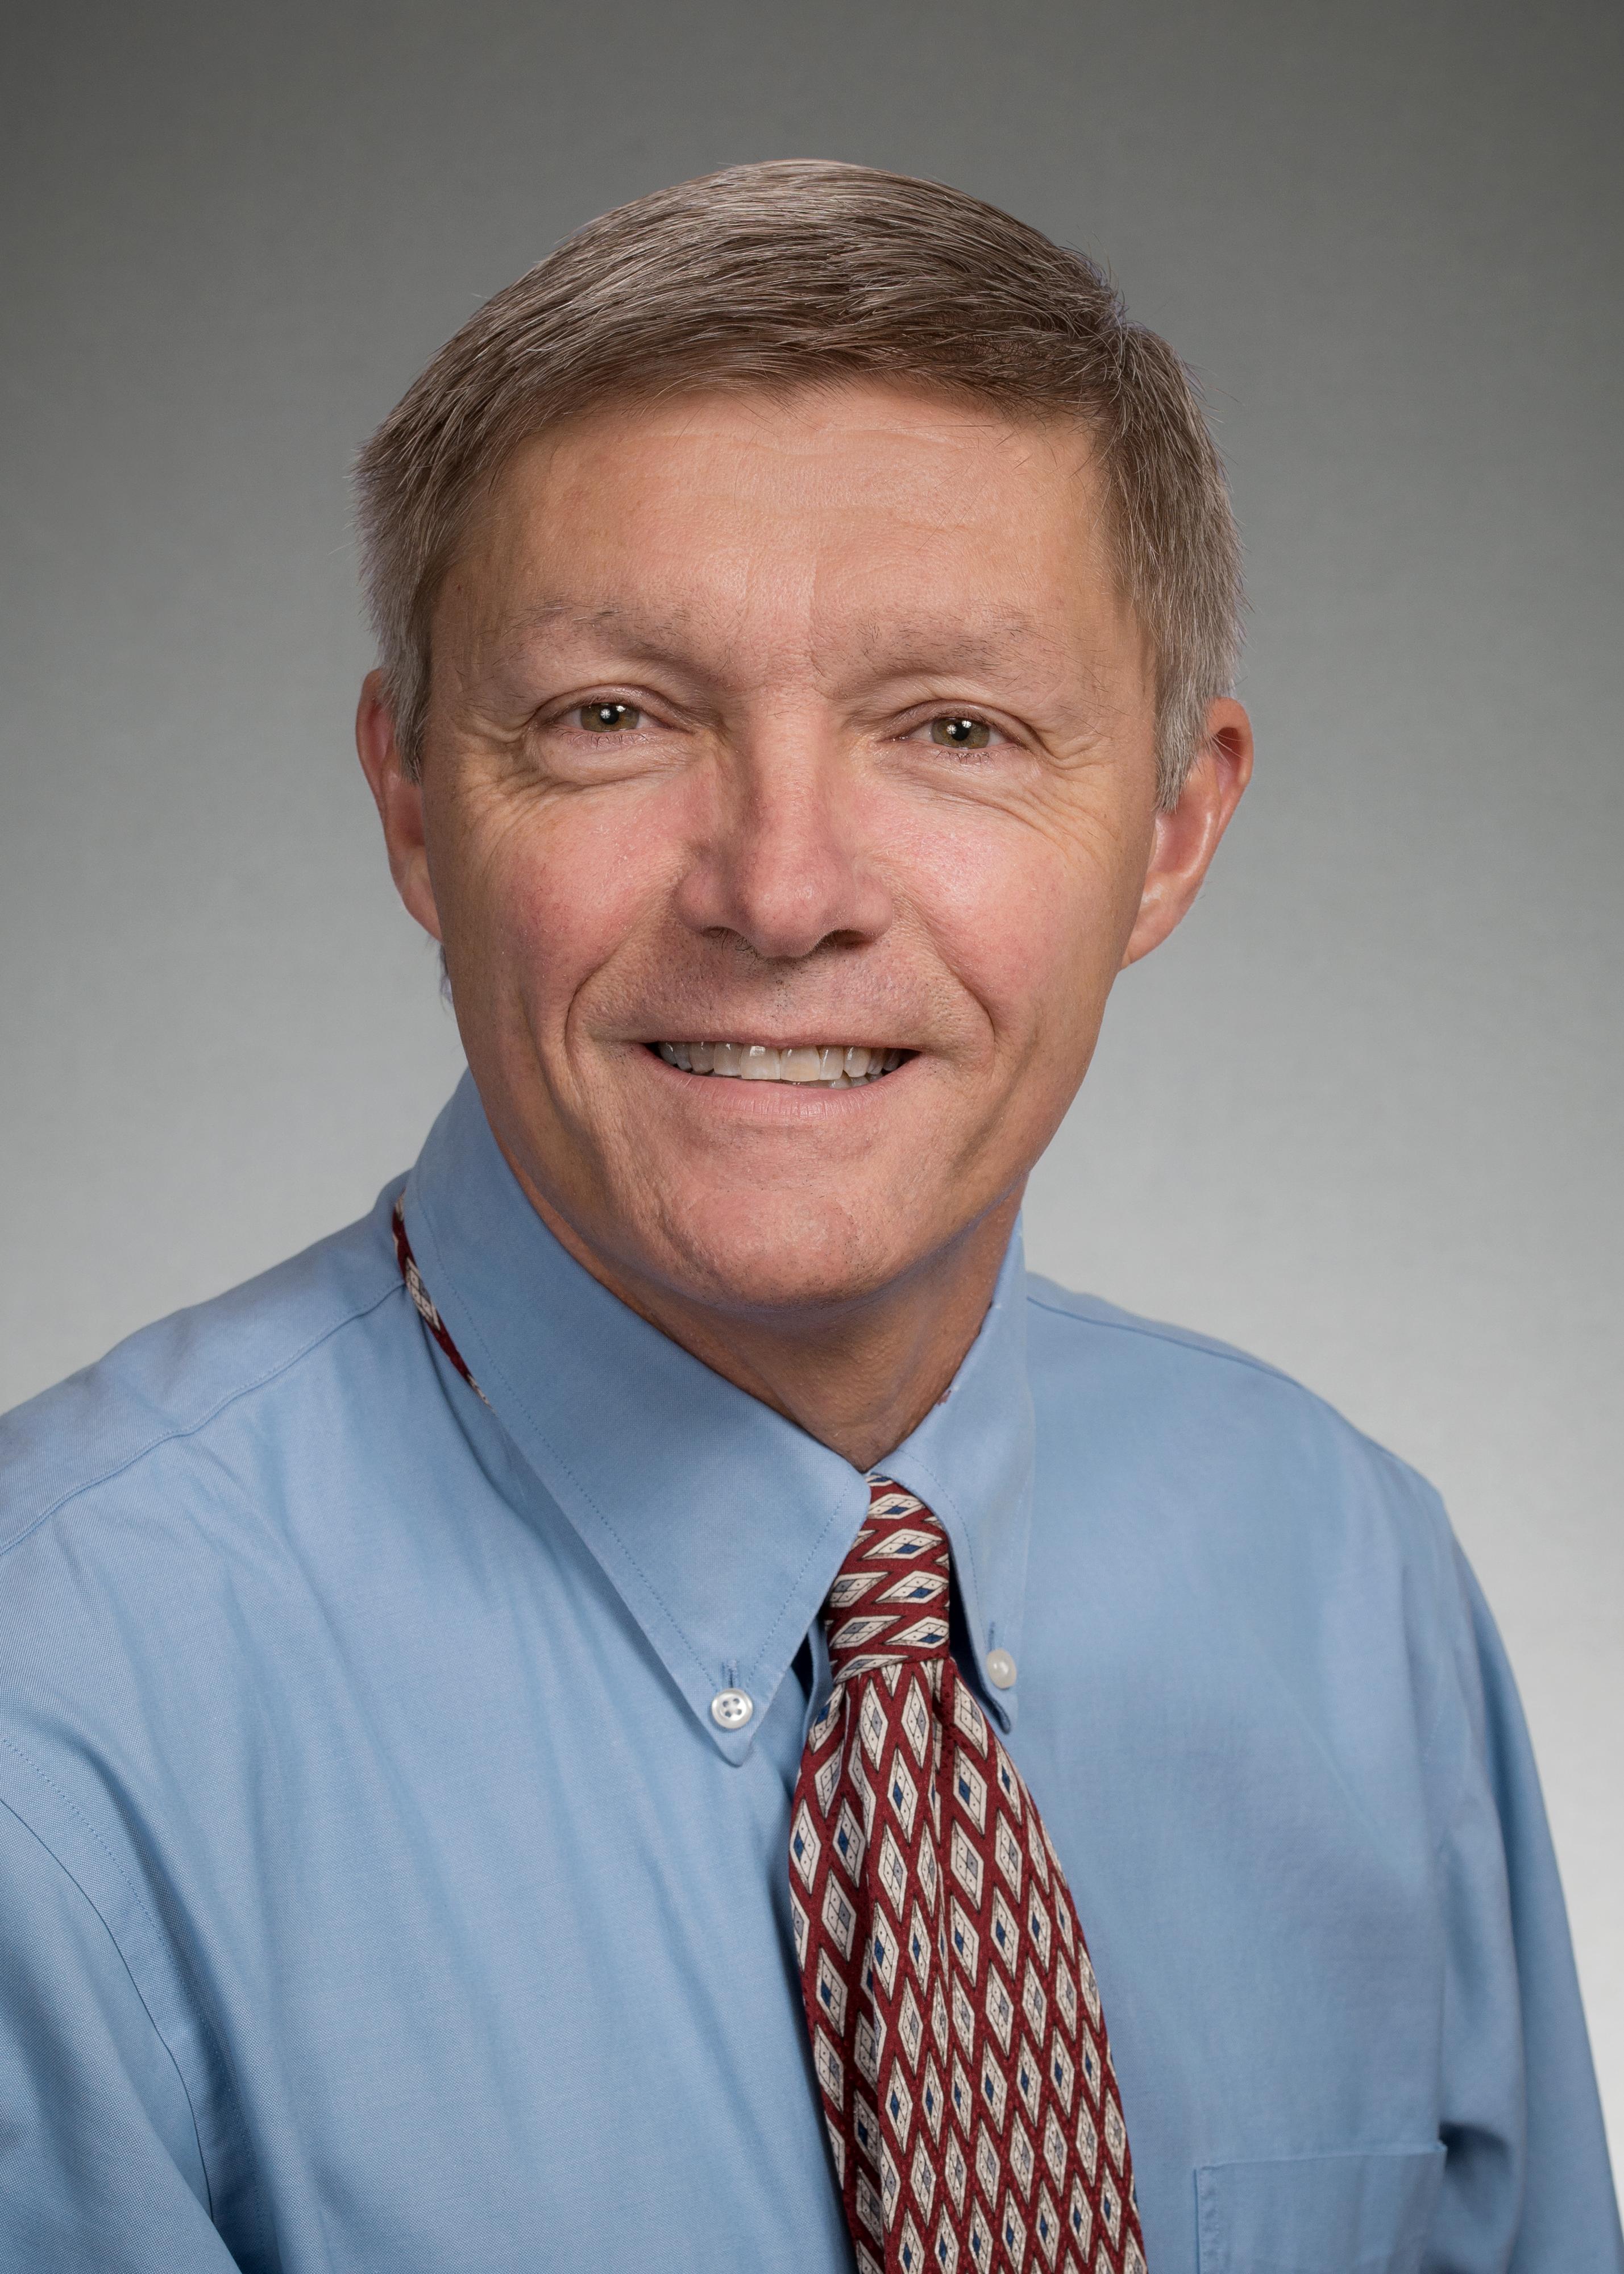 David J. Perkel, PhD